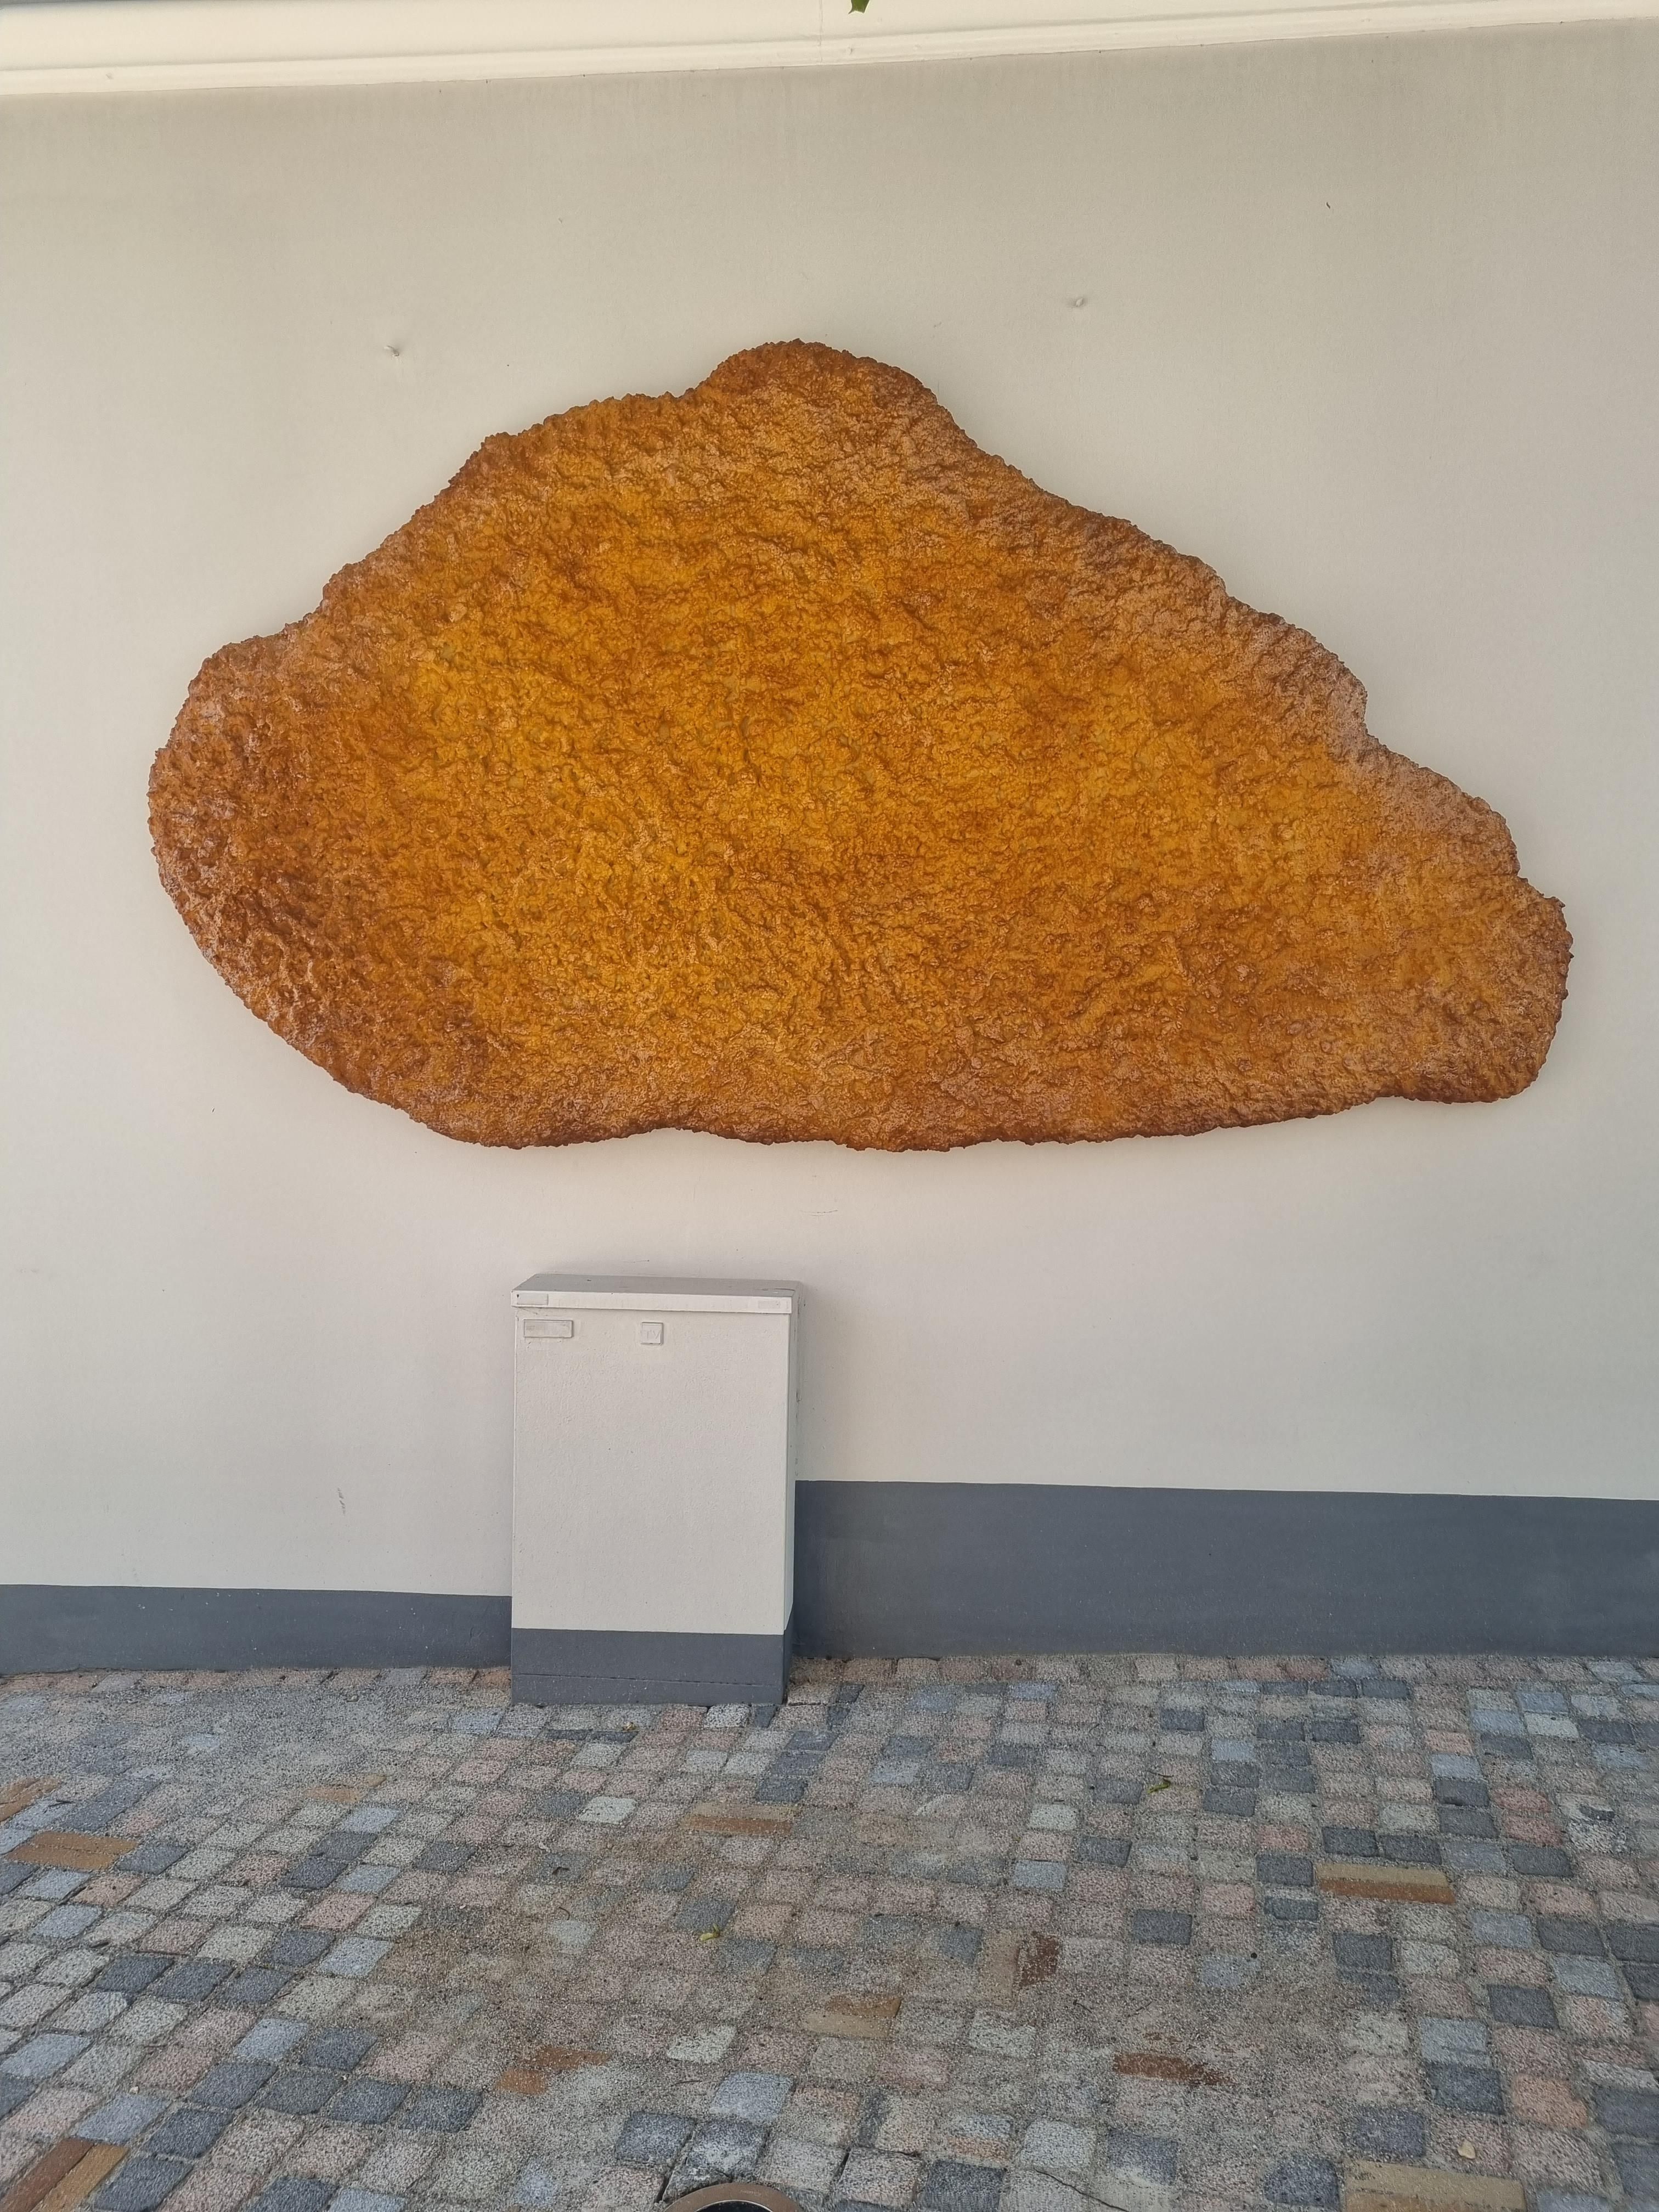 My town put up a 108kg fish fillet, as an art piece